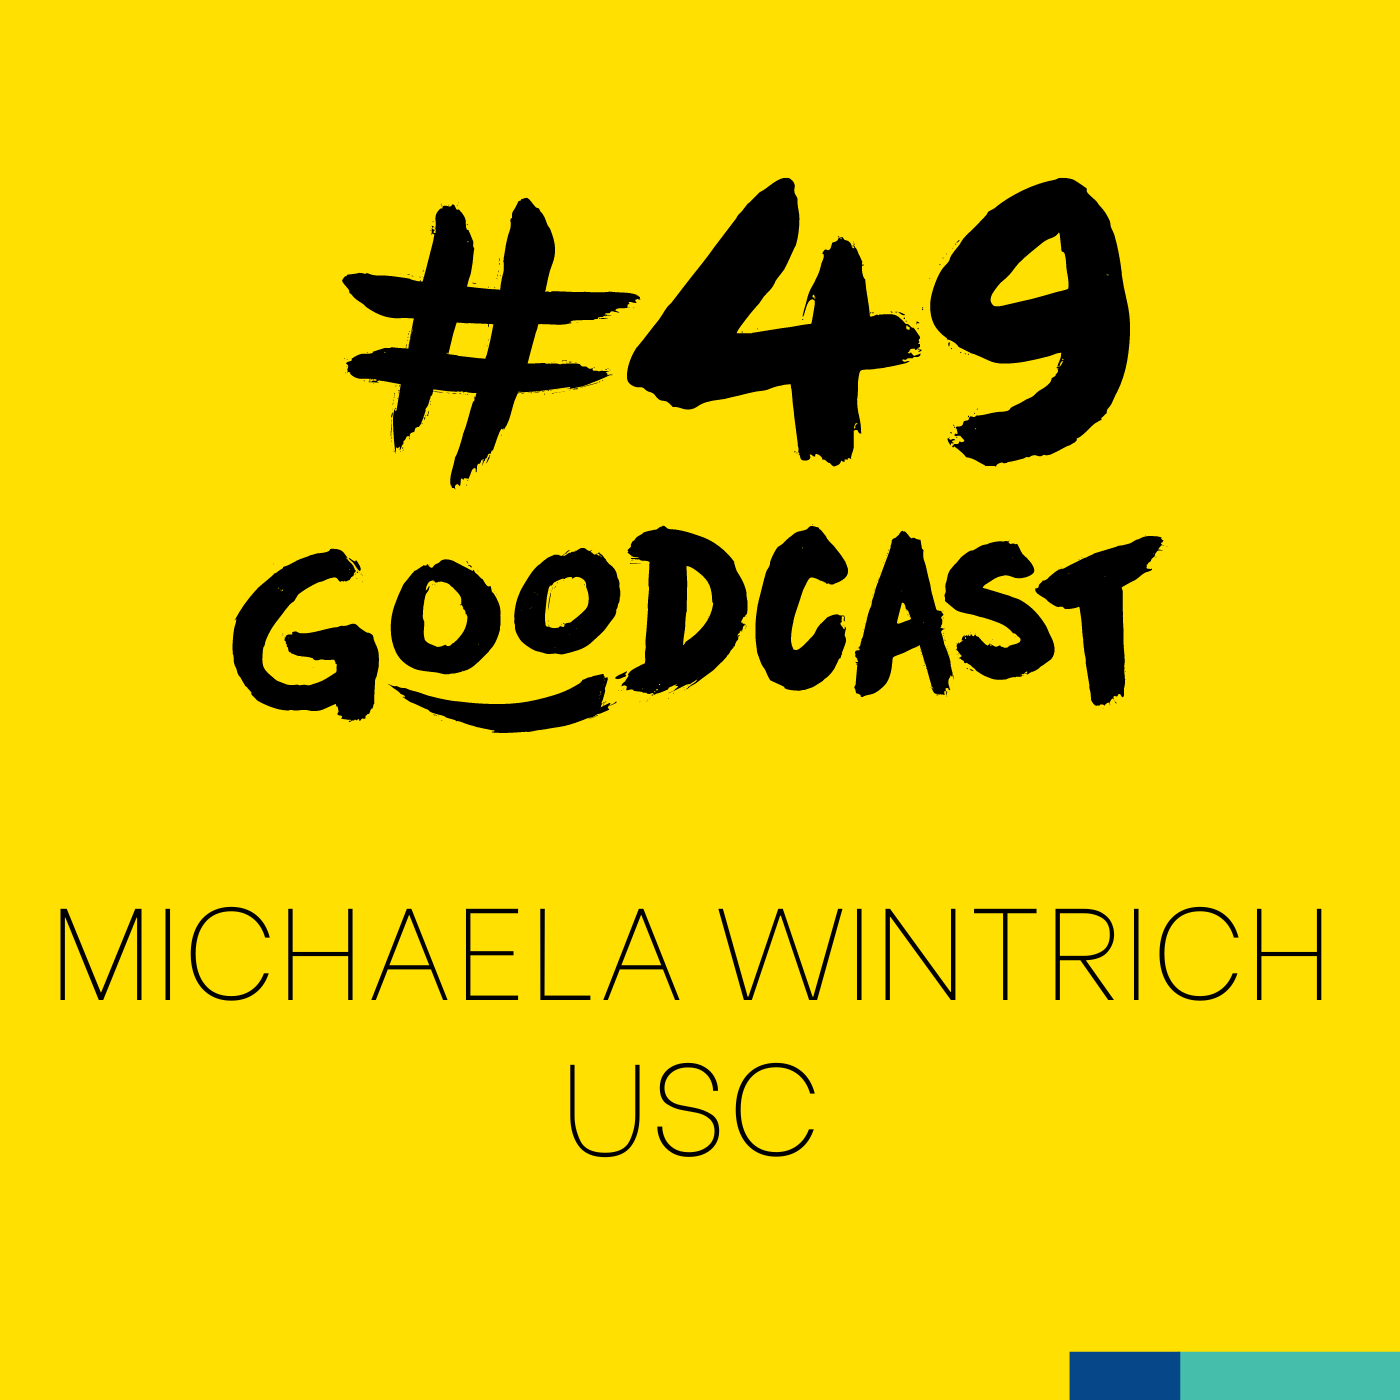 #49 Michaela Wintrich von der USC - Lasst es uns doch endlich anders machen